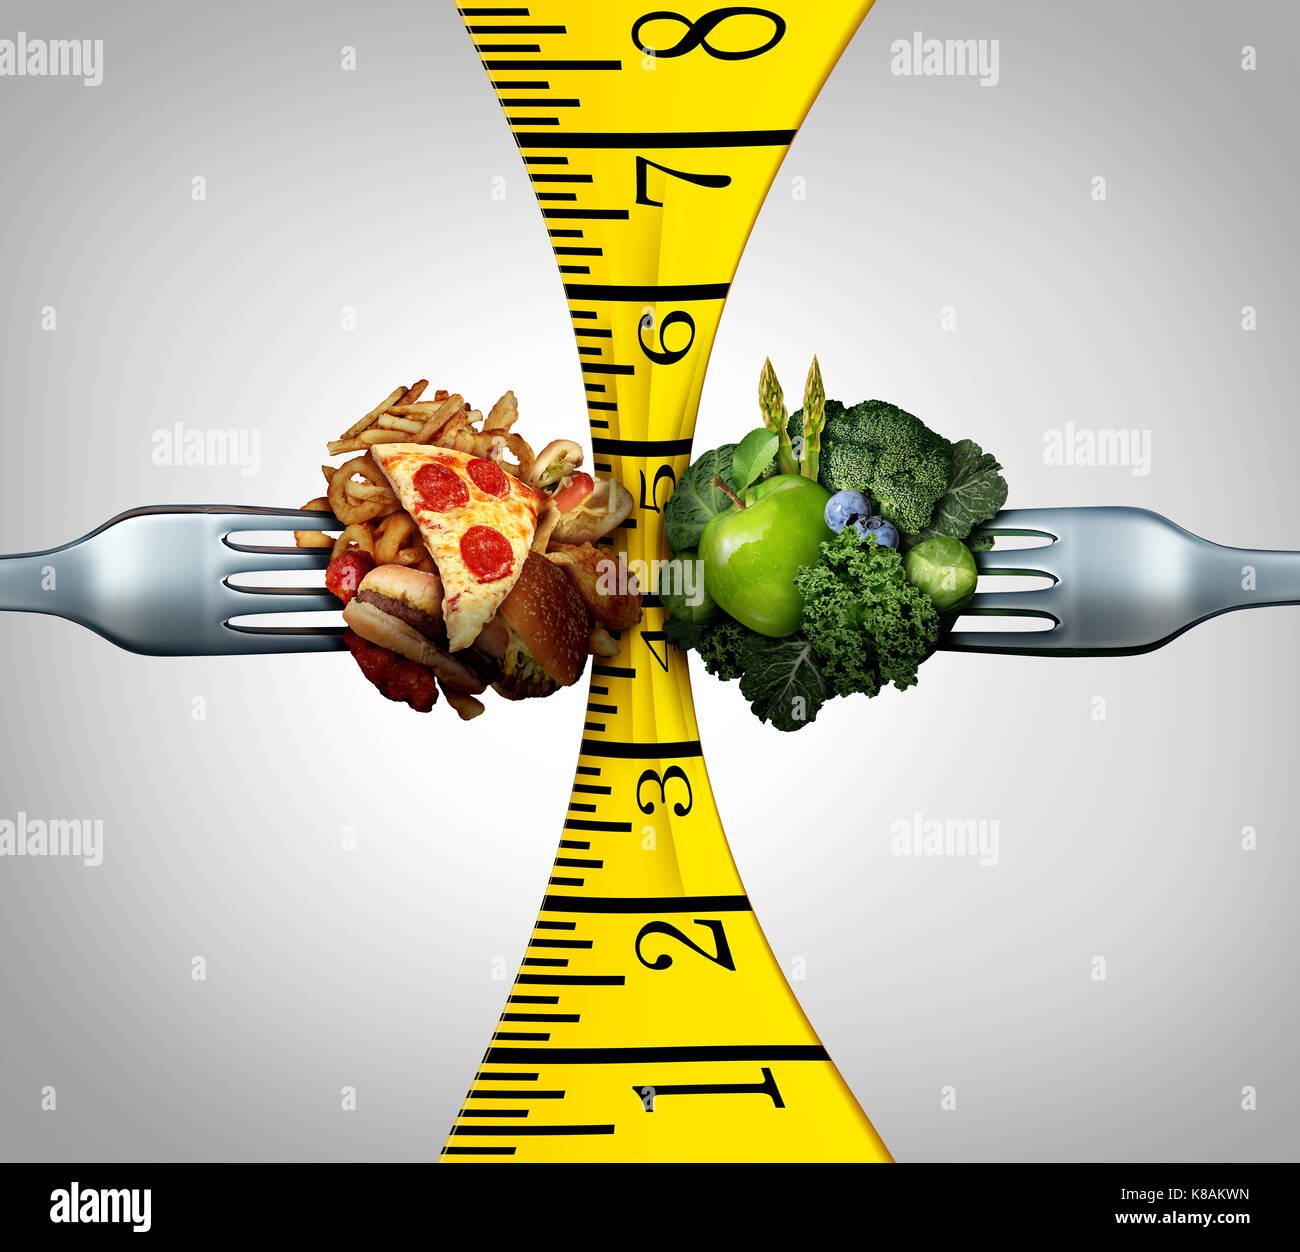 Maßband Ernährung und Gewichtskontrolle squeeze Konzept als zwei Gabeln mit Junk Food und gesundes Obst und Gemüse ein Werkzeug messen. Stockfoto